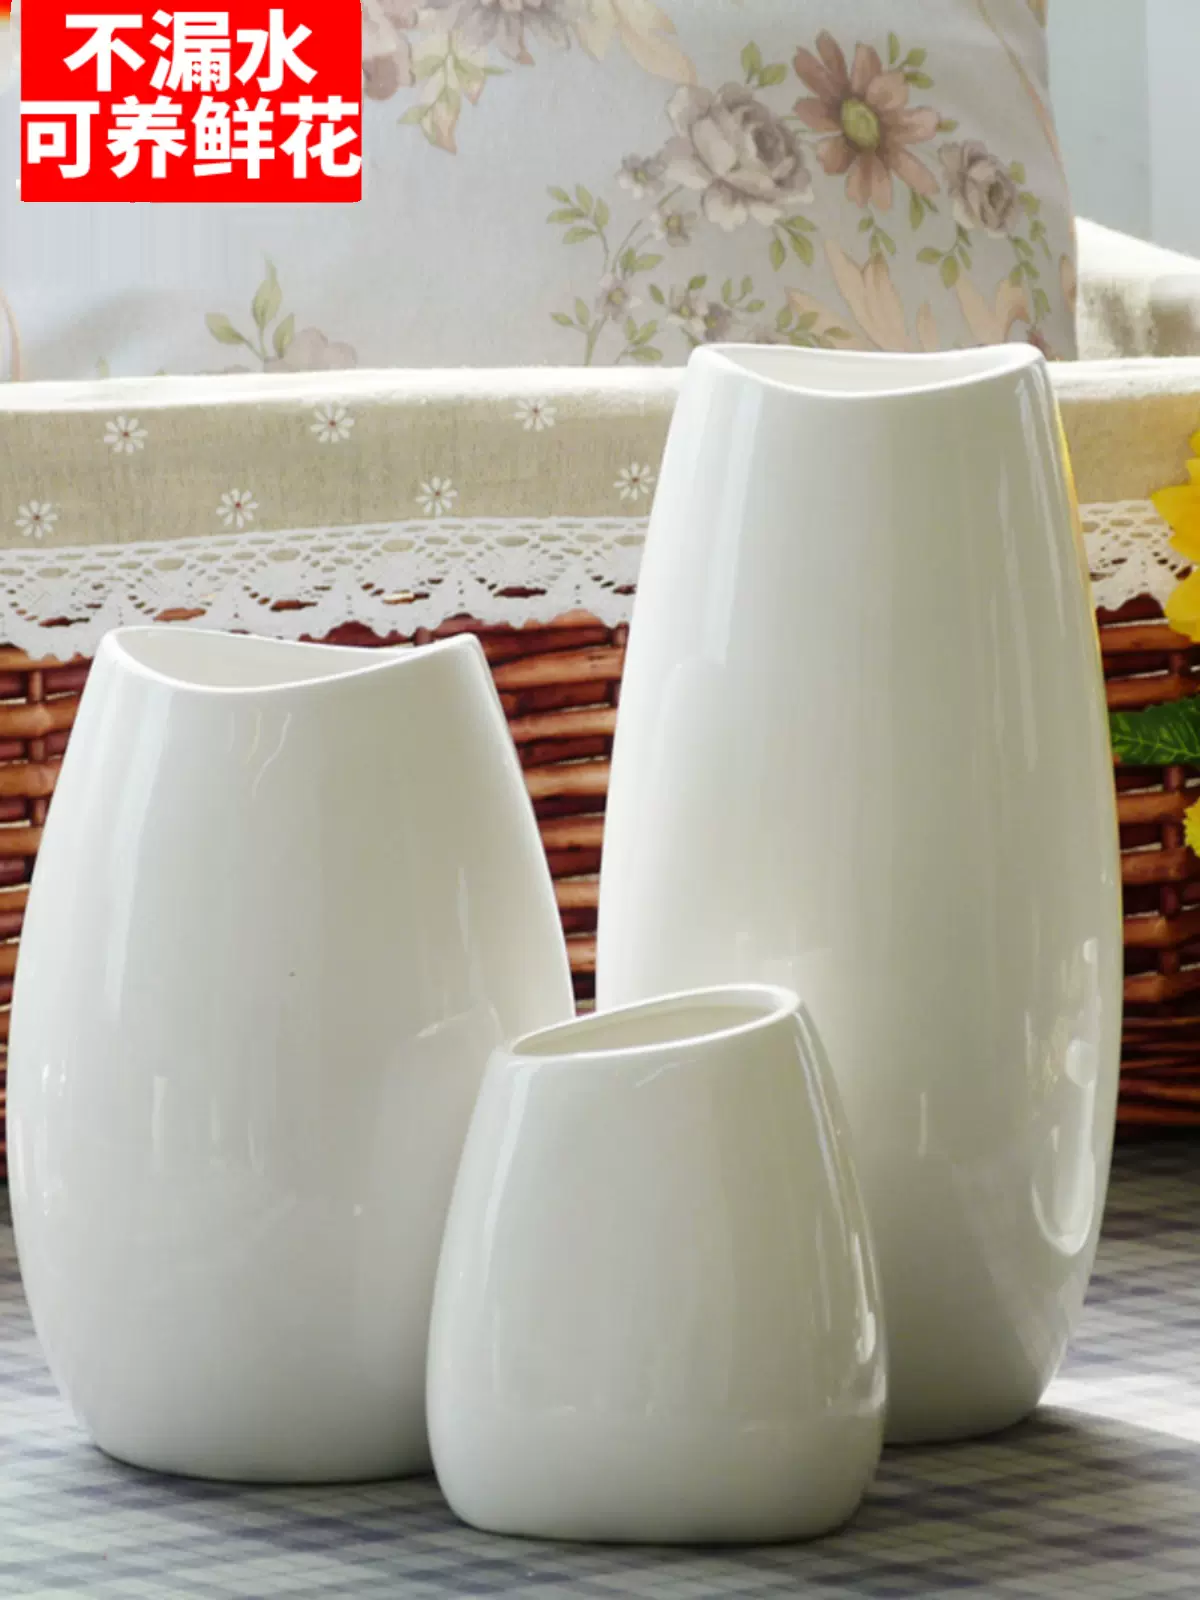 花器 花瓶 手づくり 水盤 O01 白 :kaki-230:小林陶芸 - 通販 - Yahoo!ショッピング - 花、ガーデニング